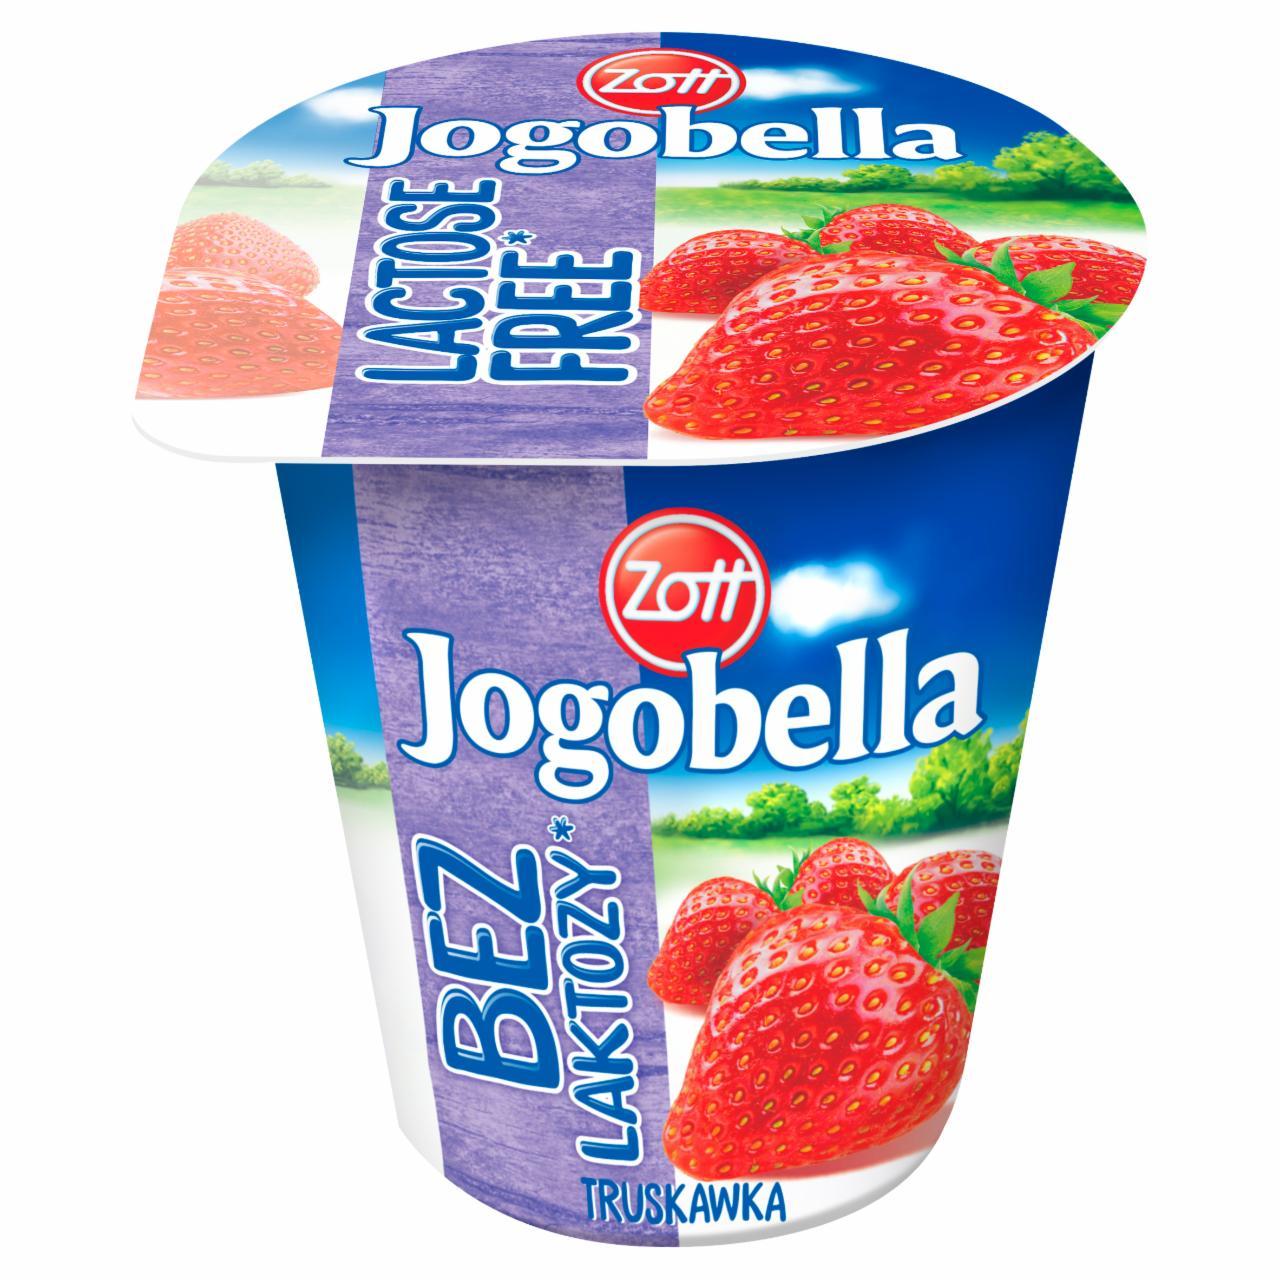 Zdjęcia - Zott Jogobella Bez laktozy Jogurt owocowy Standard 150 g